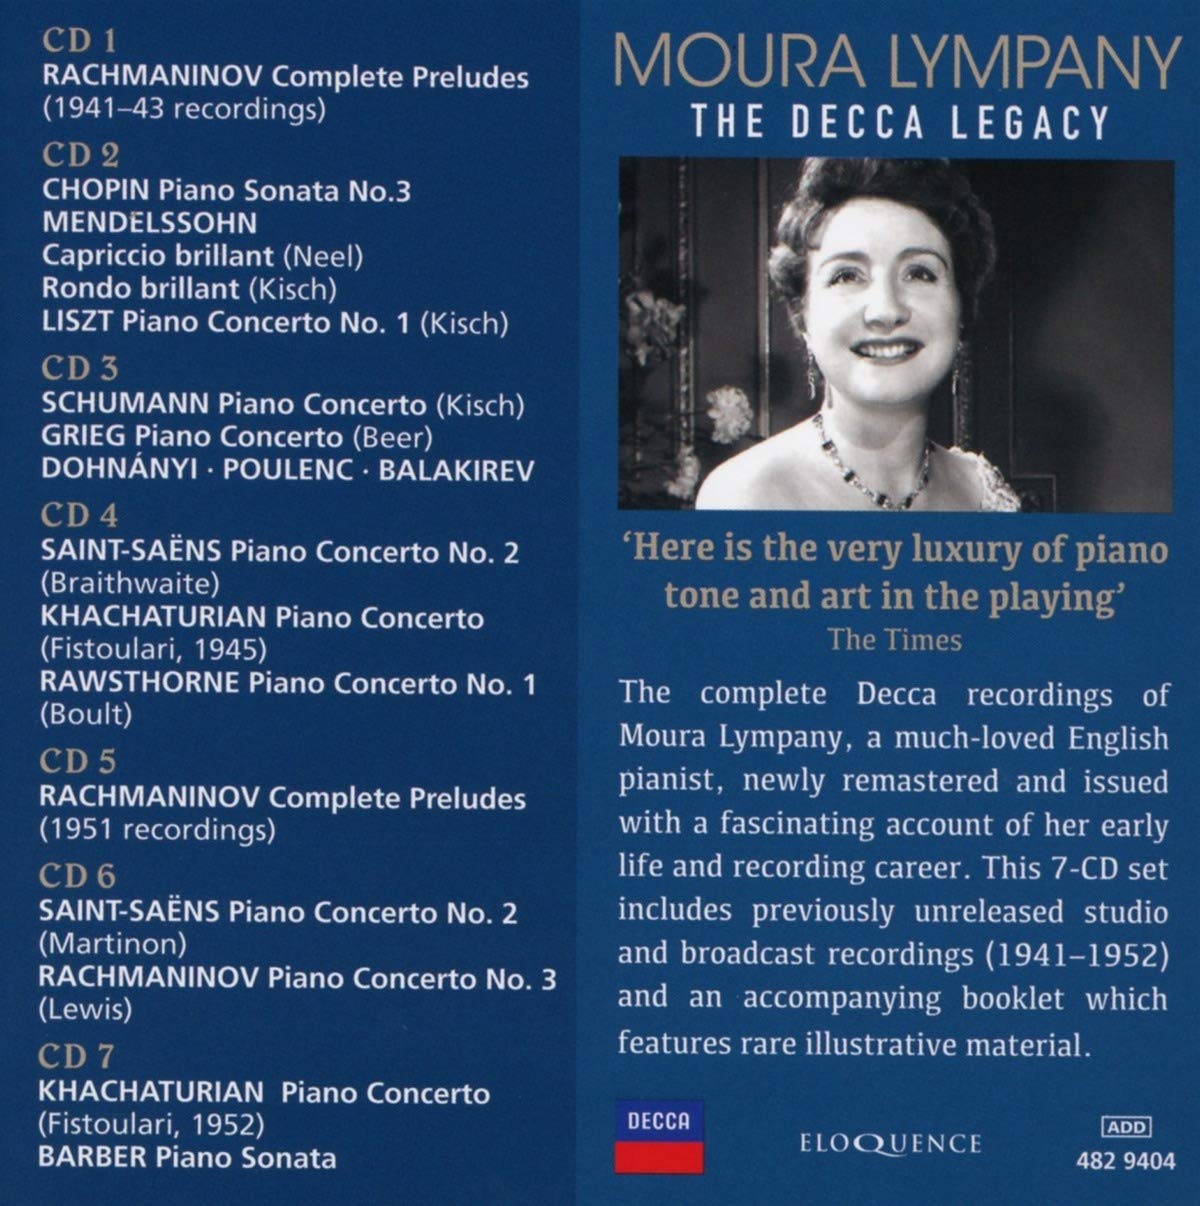 모우라 림패니 데카 레이블 녹음 모음집 (Moura Lympany - The Decca Legacy)